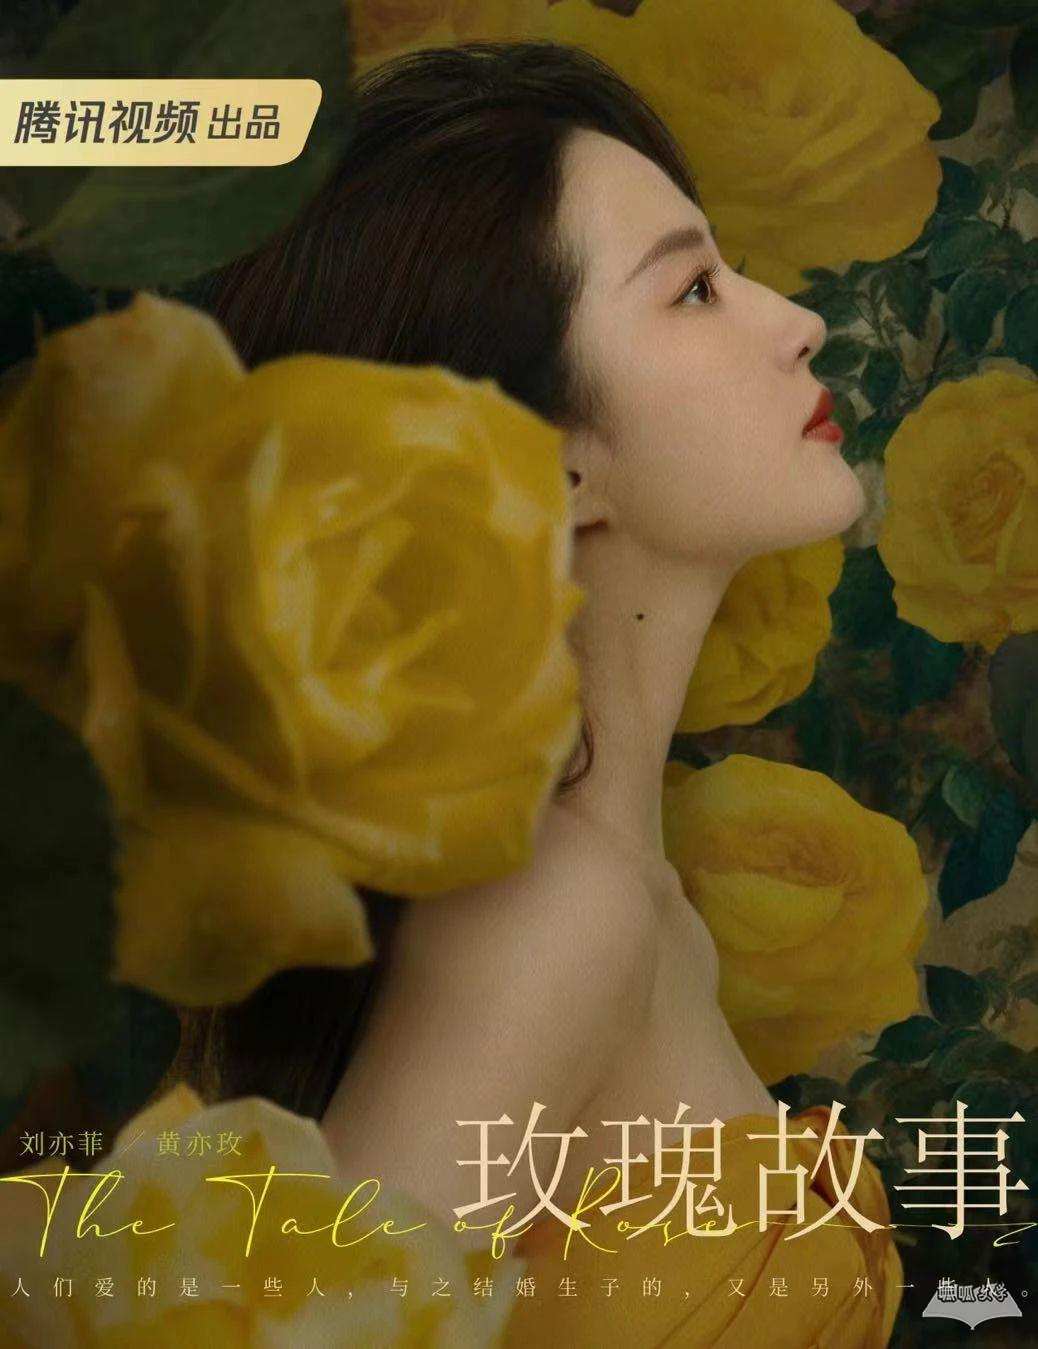 《玫瑰的故事》除了刘亦菲的美貌